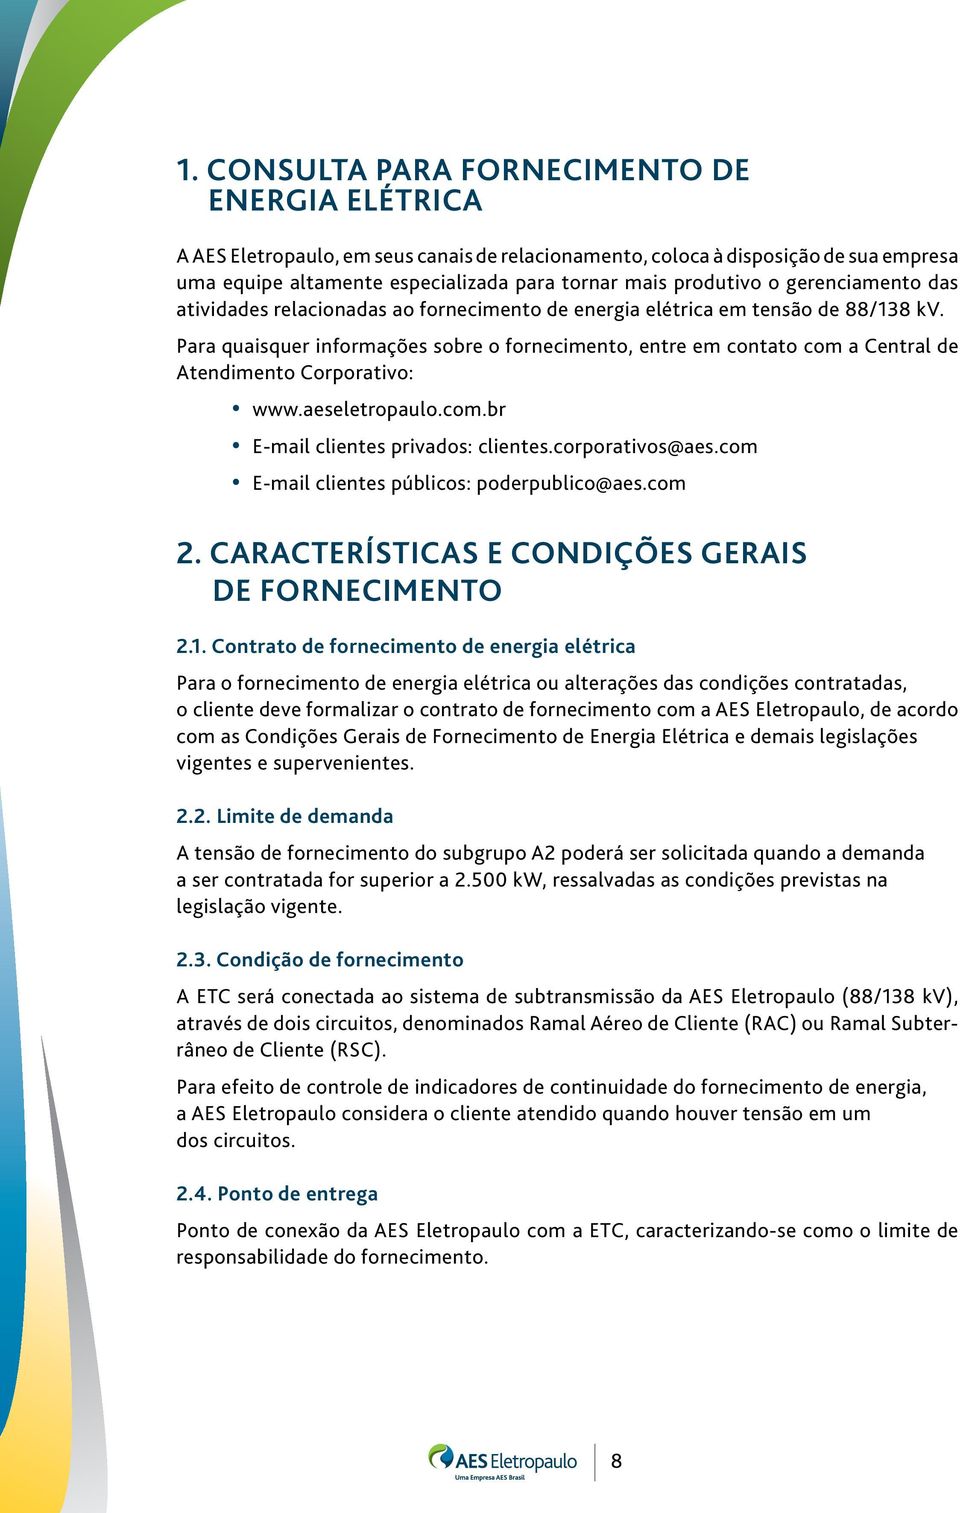 Para quaisquer informações sobre o fornecimento, entre em contato com a Central de Atendimento Corporativo: www.aeseletropaulo.com.br E-mail clientes privados: clientes.corporativos@aes.